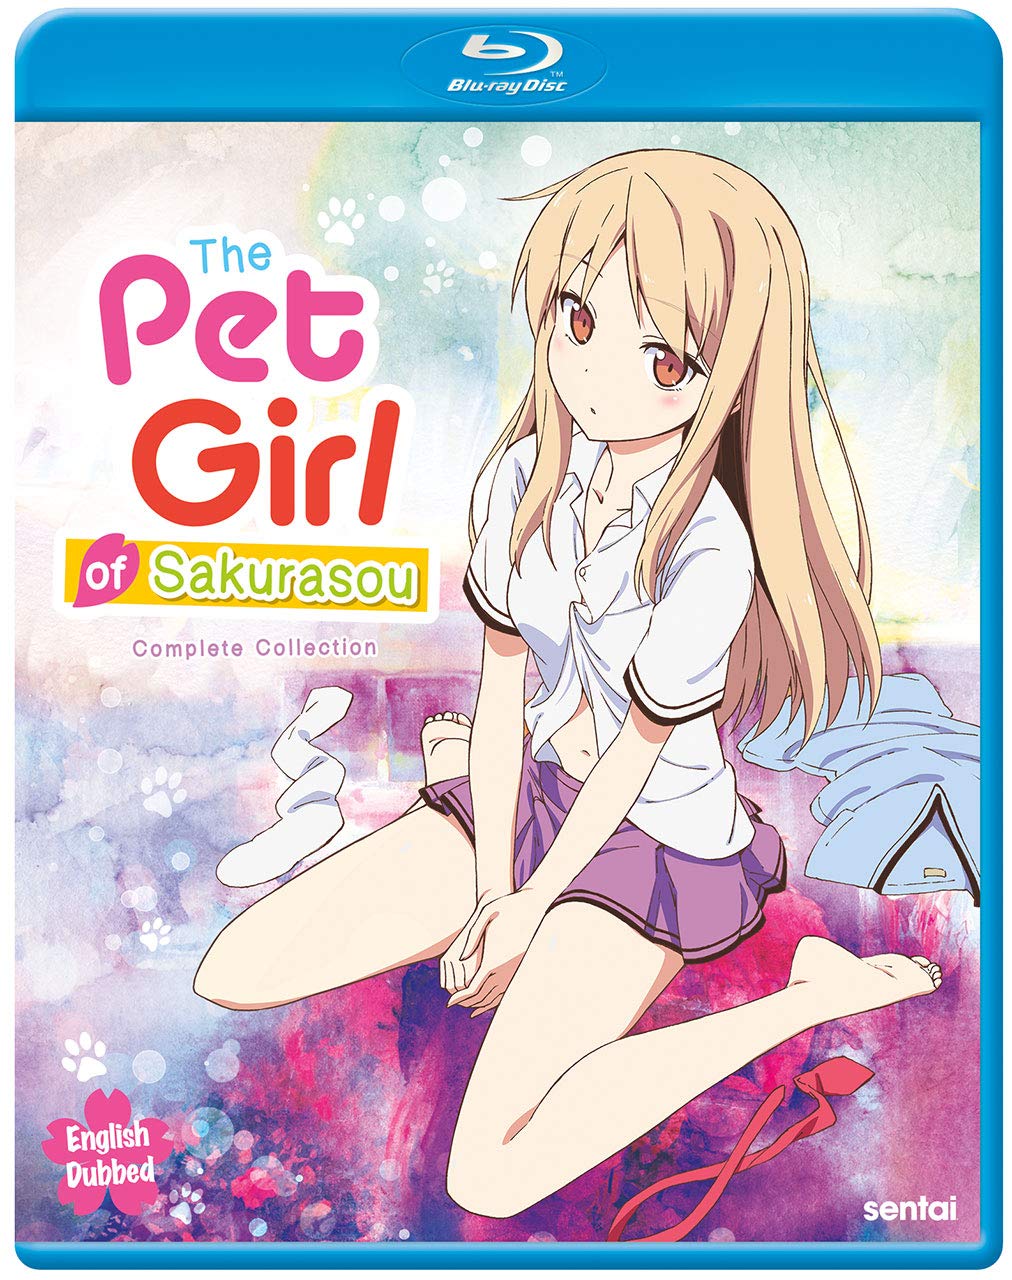 The Pet girl of Sakurasou: complete collection